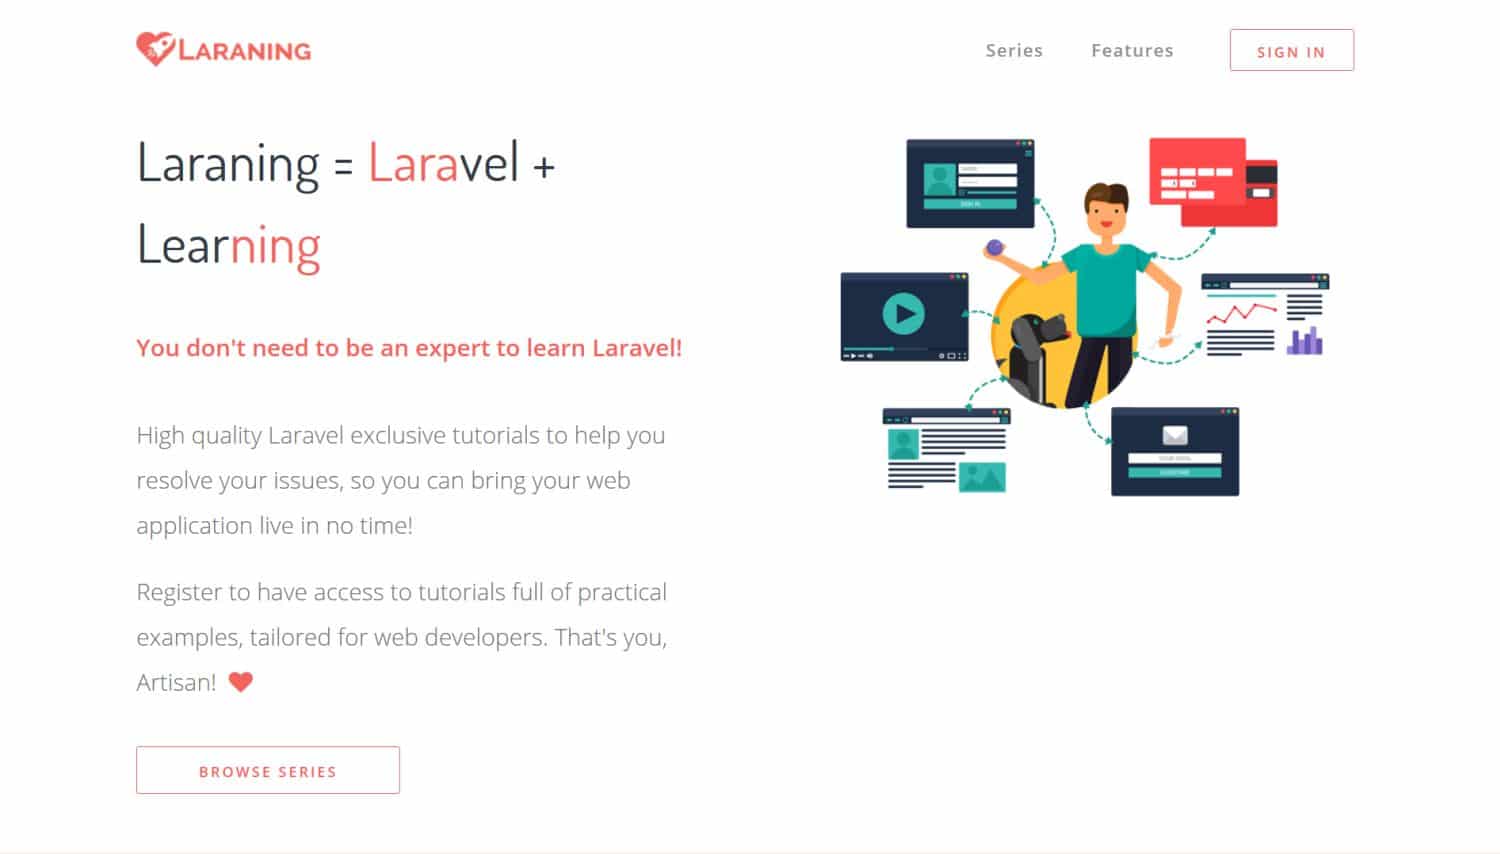 Laraning - Laravel tutorial